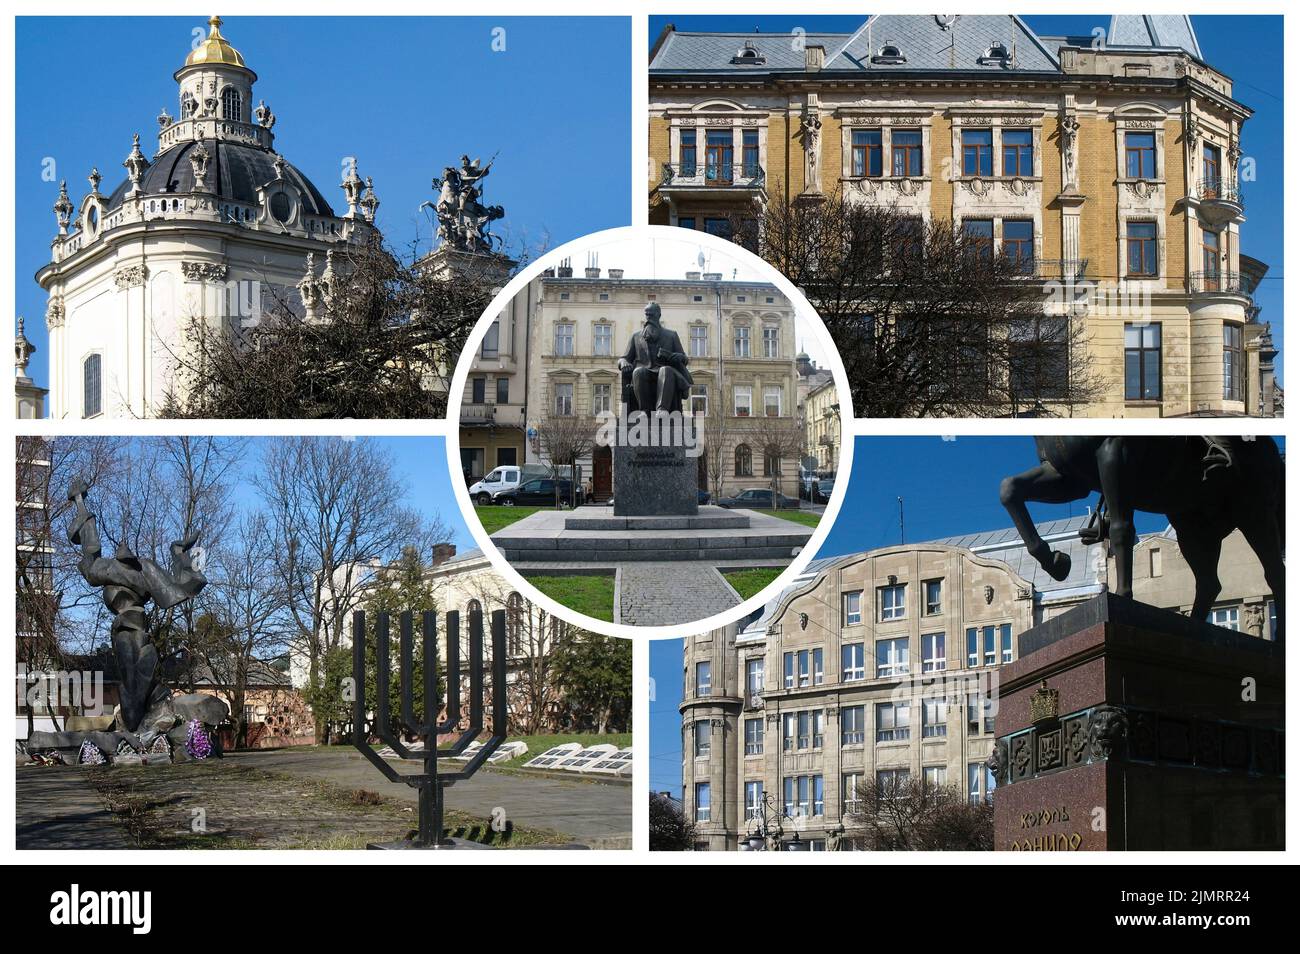 La graziosa città Ucraina di Lviv con le sue chiese e palazzi nel piccolo centro storico, che si riferiscono a suggestive e romantiche atmosfere Foto Stock